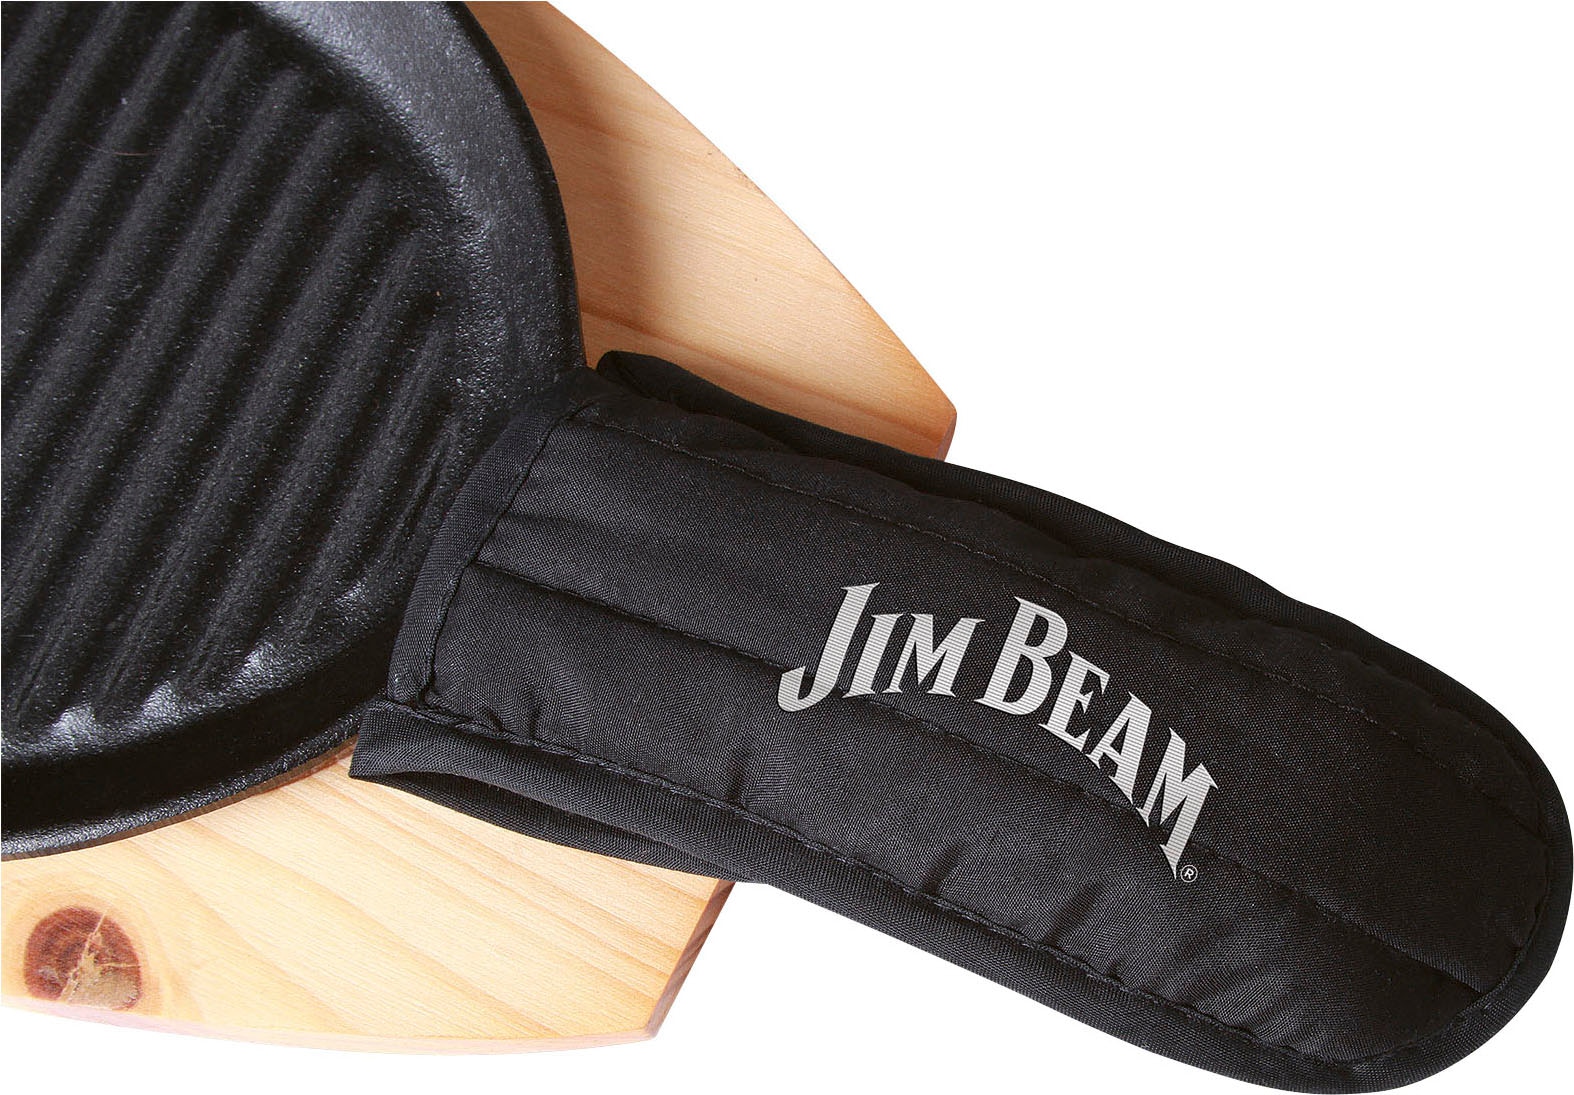 Jim Beam BBQ Grillpfanne, Gusseisen, (Set, 3 tlg.), inkl. Holzuntersetzer und Griffüberzug